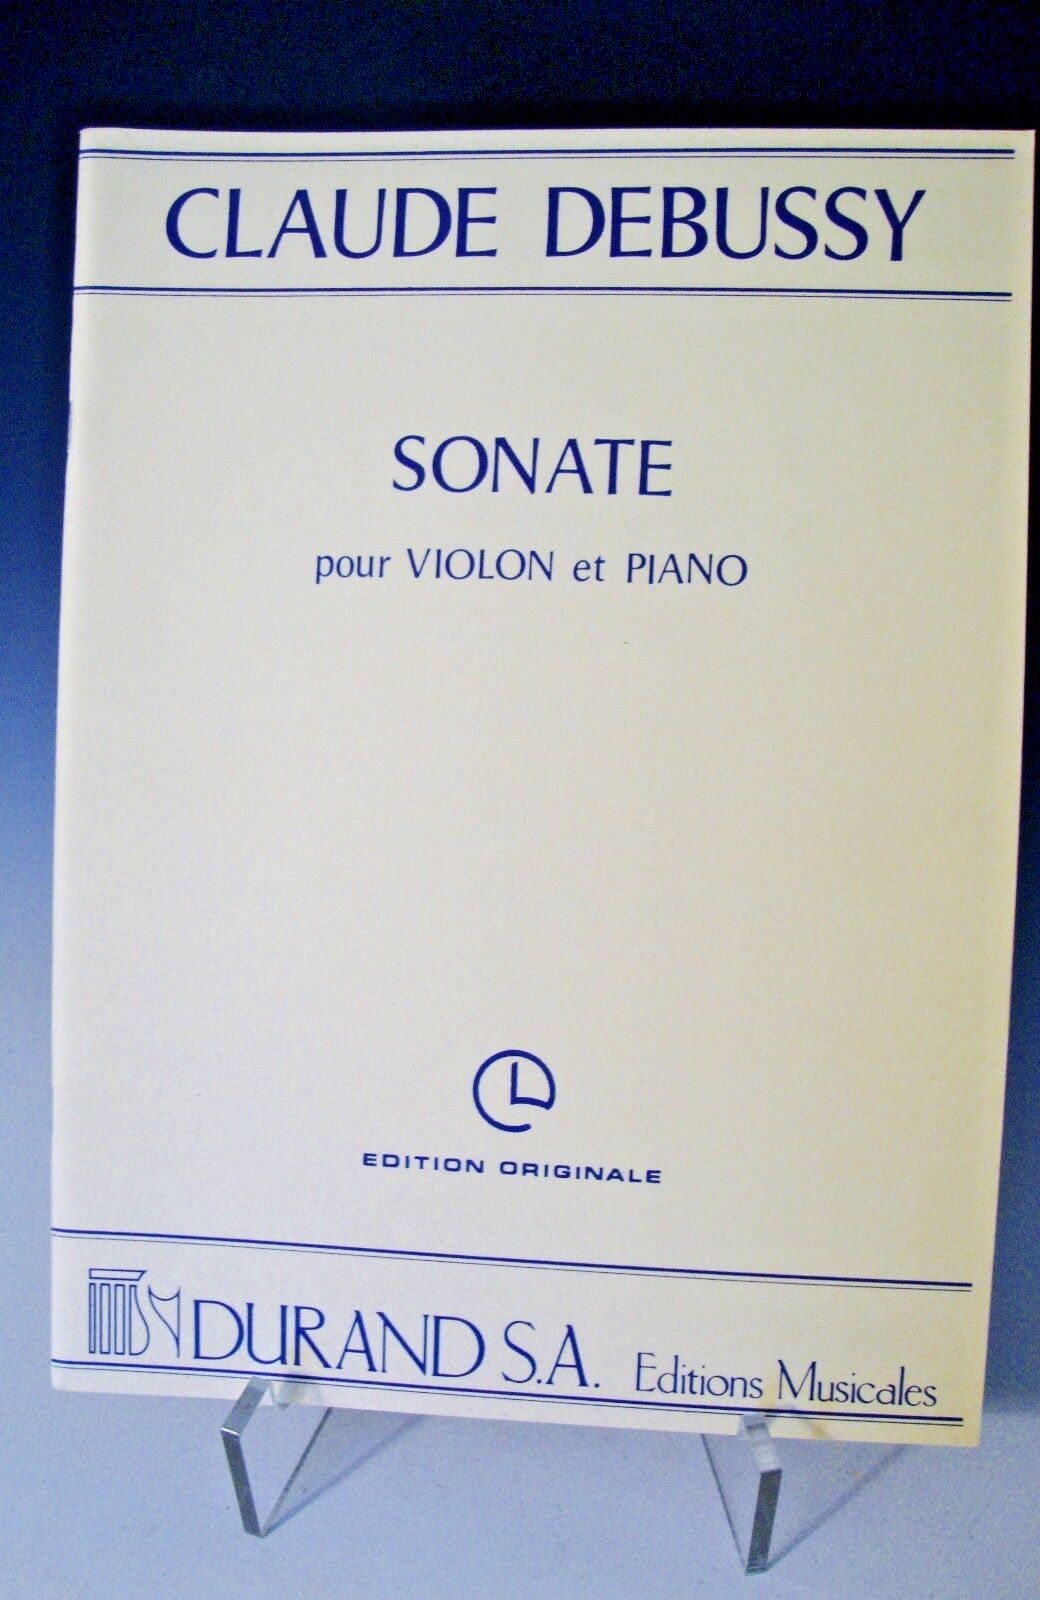 Claude Debussy Sonate pour Violon et Piano Sheet Music Edition Originale (234)